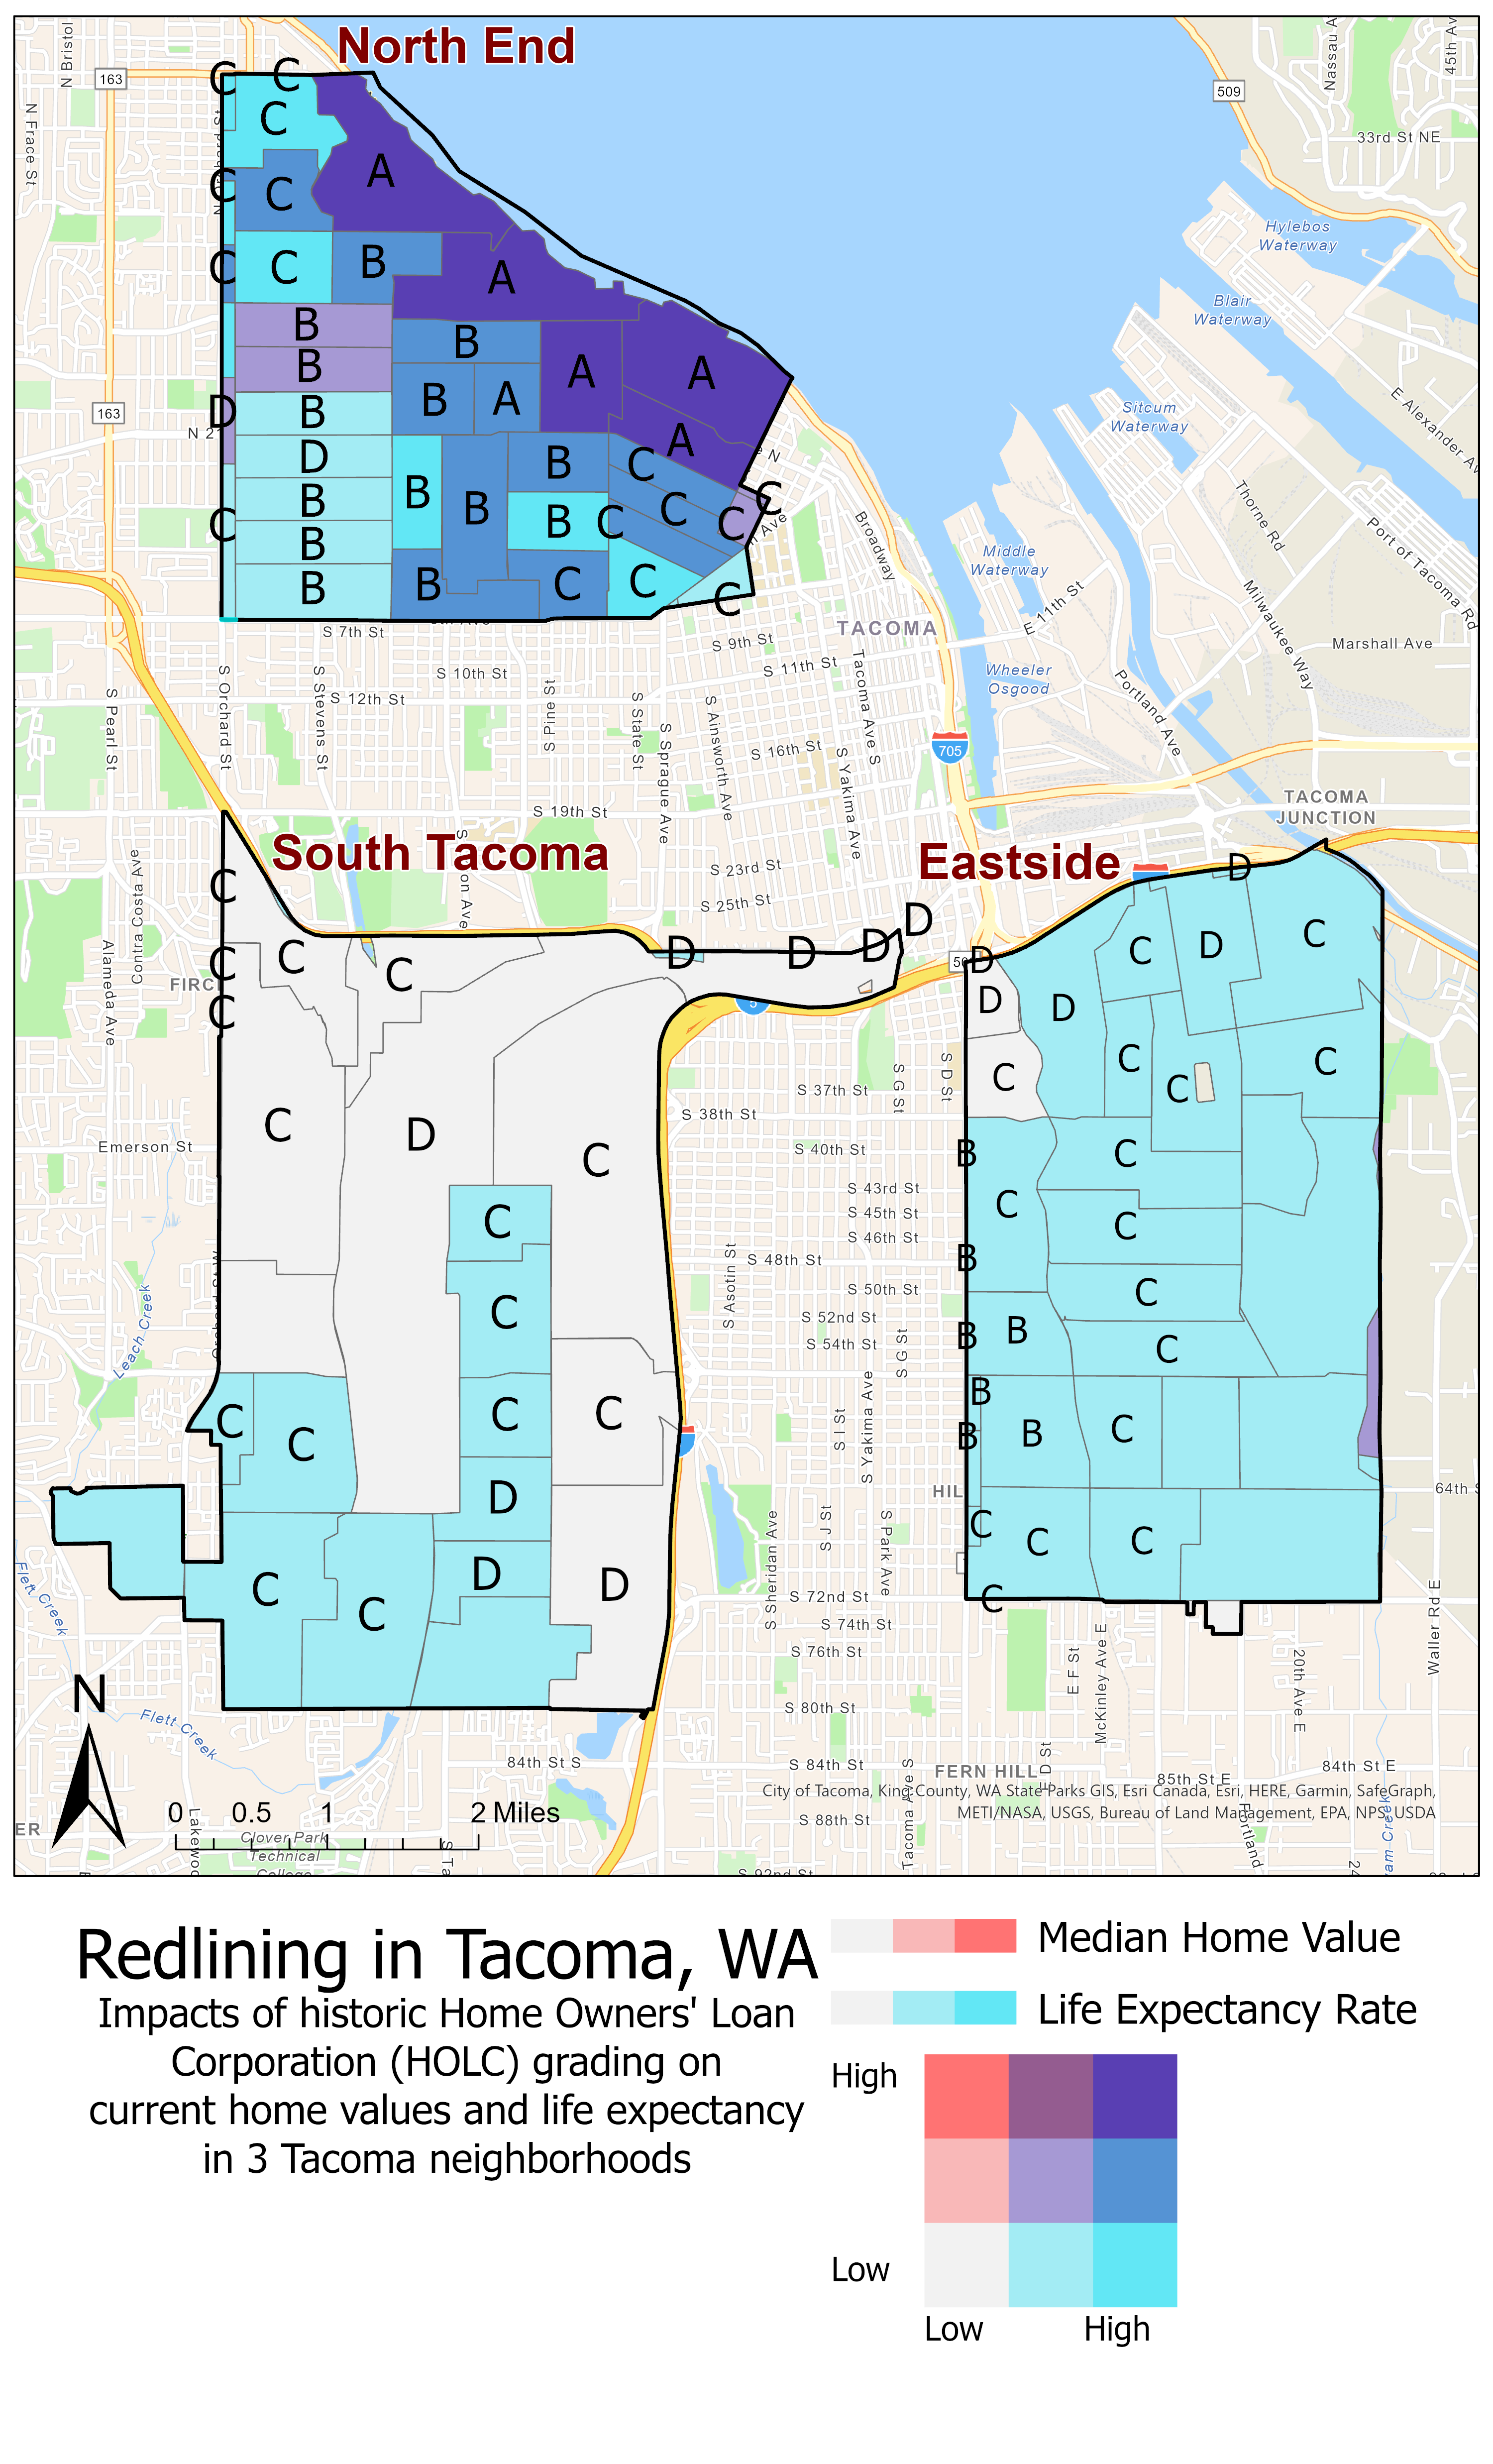 Redlining in Tacoma, Washington